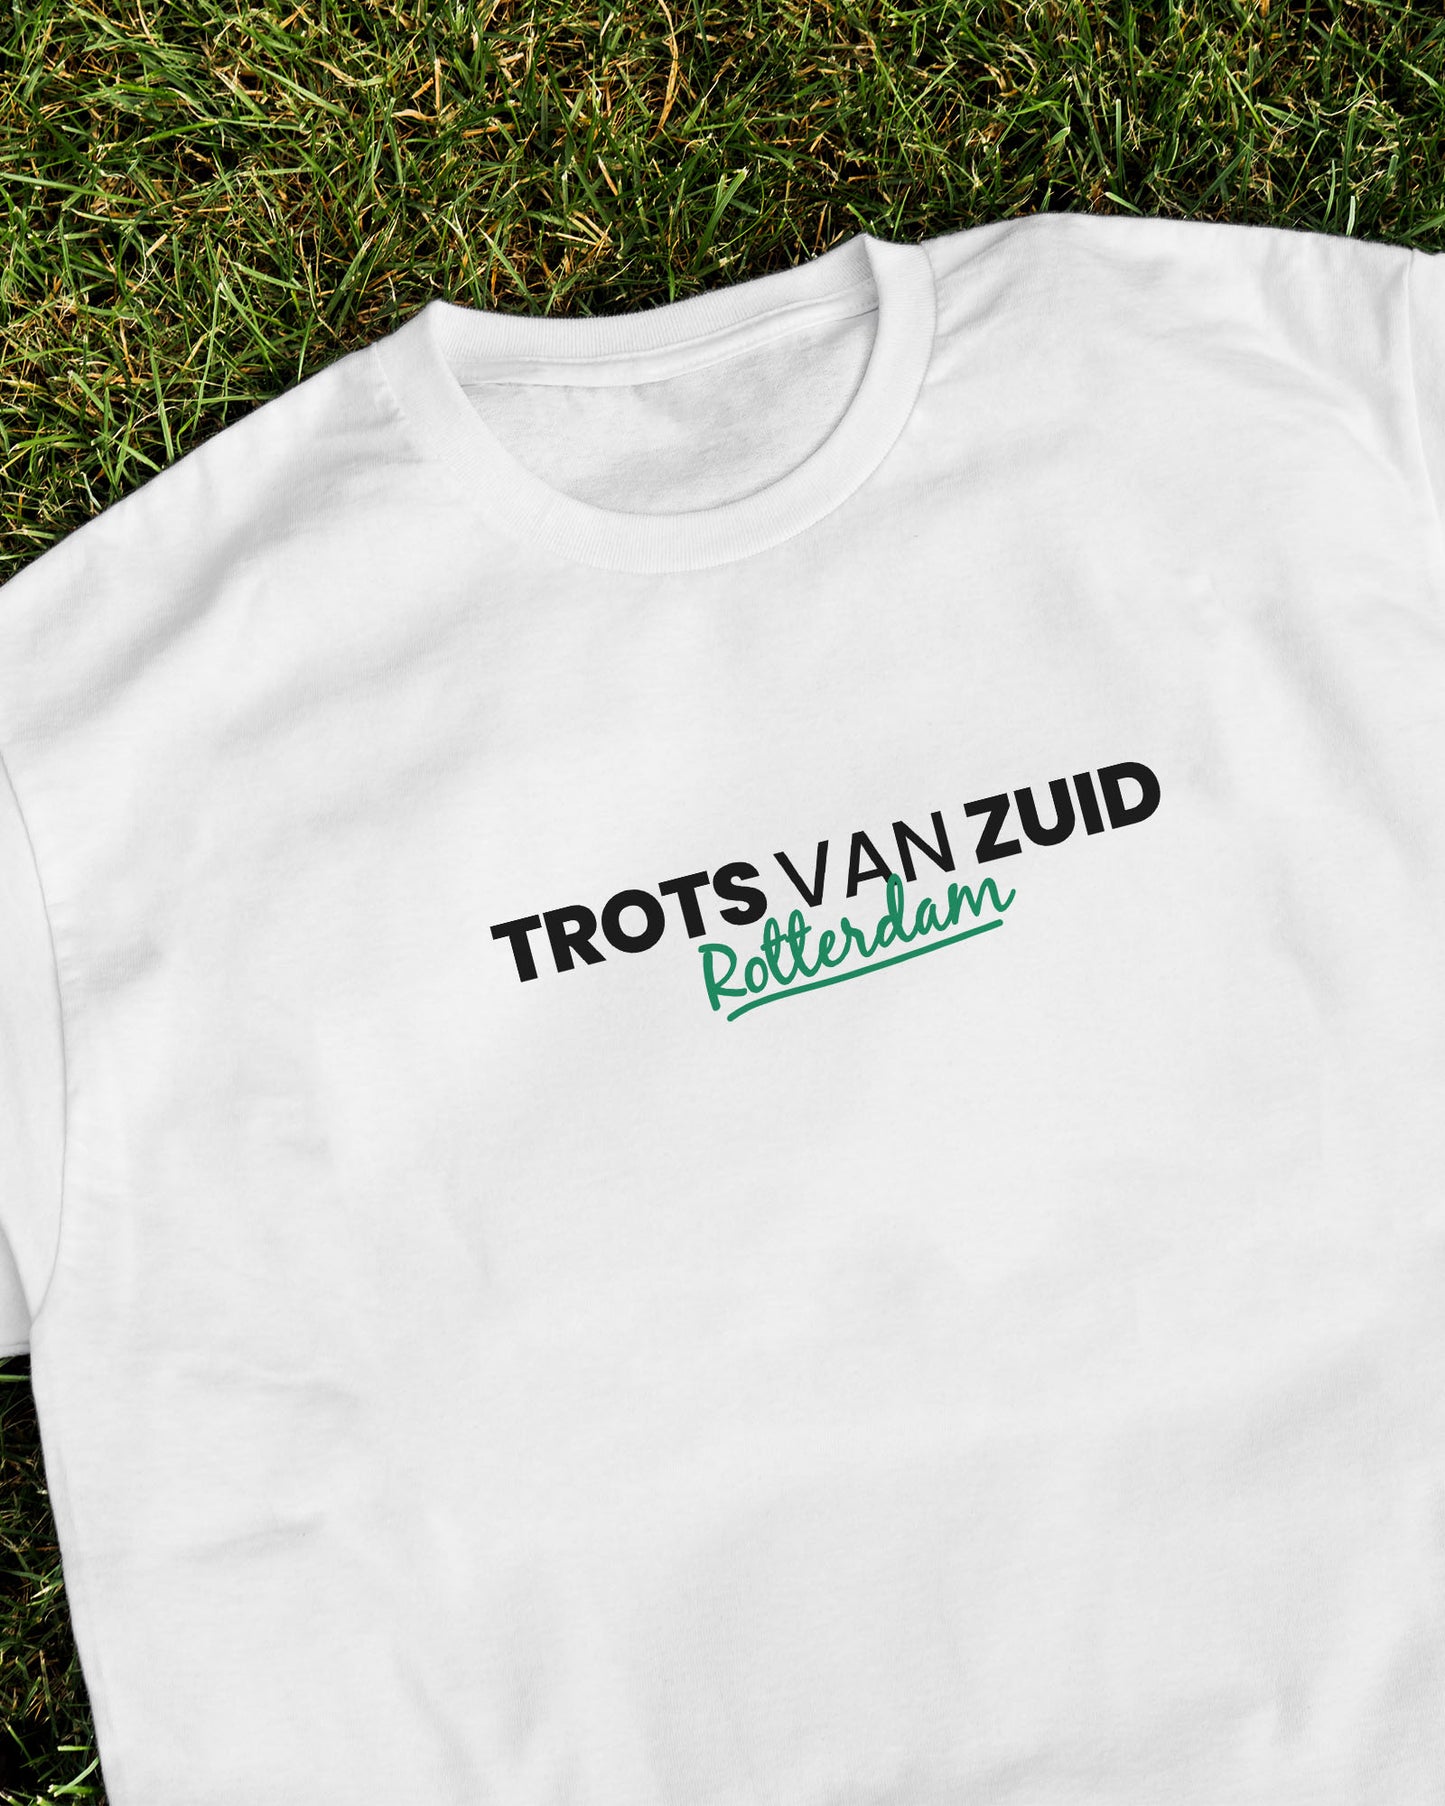 Trots van Zuid Rotterdam T-Shirt